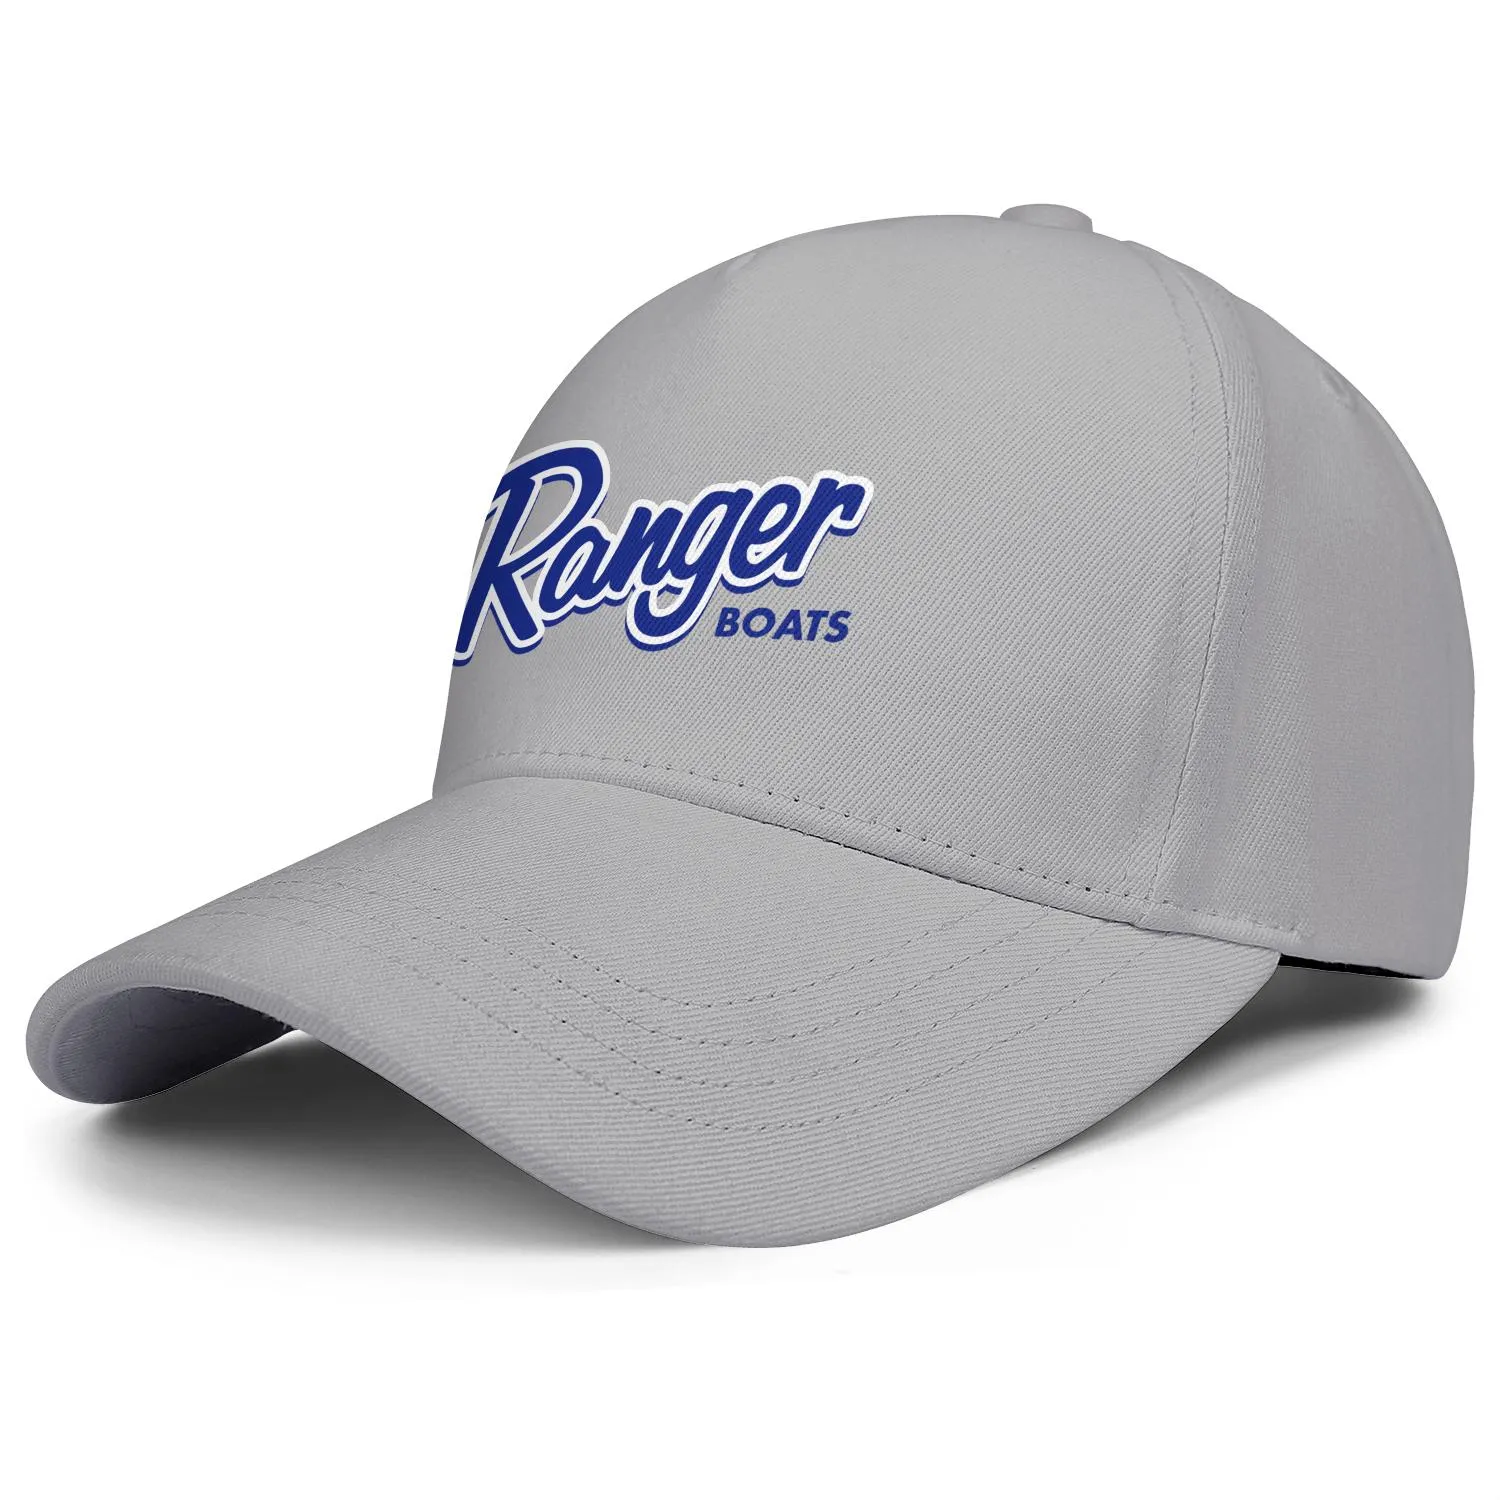 Ranger Boats Logo EST Erkekler ve Kadınlar İçin Ayarlanabilir Kamyon Şefi Tasarım Vintage kişiselleştirilmiş modaya uygun beyzbolhatlar hala Toge5299813